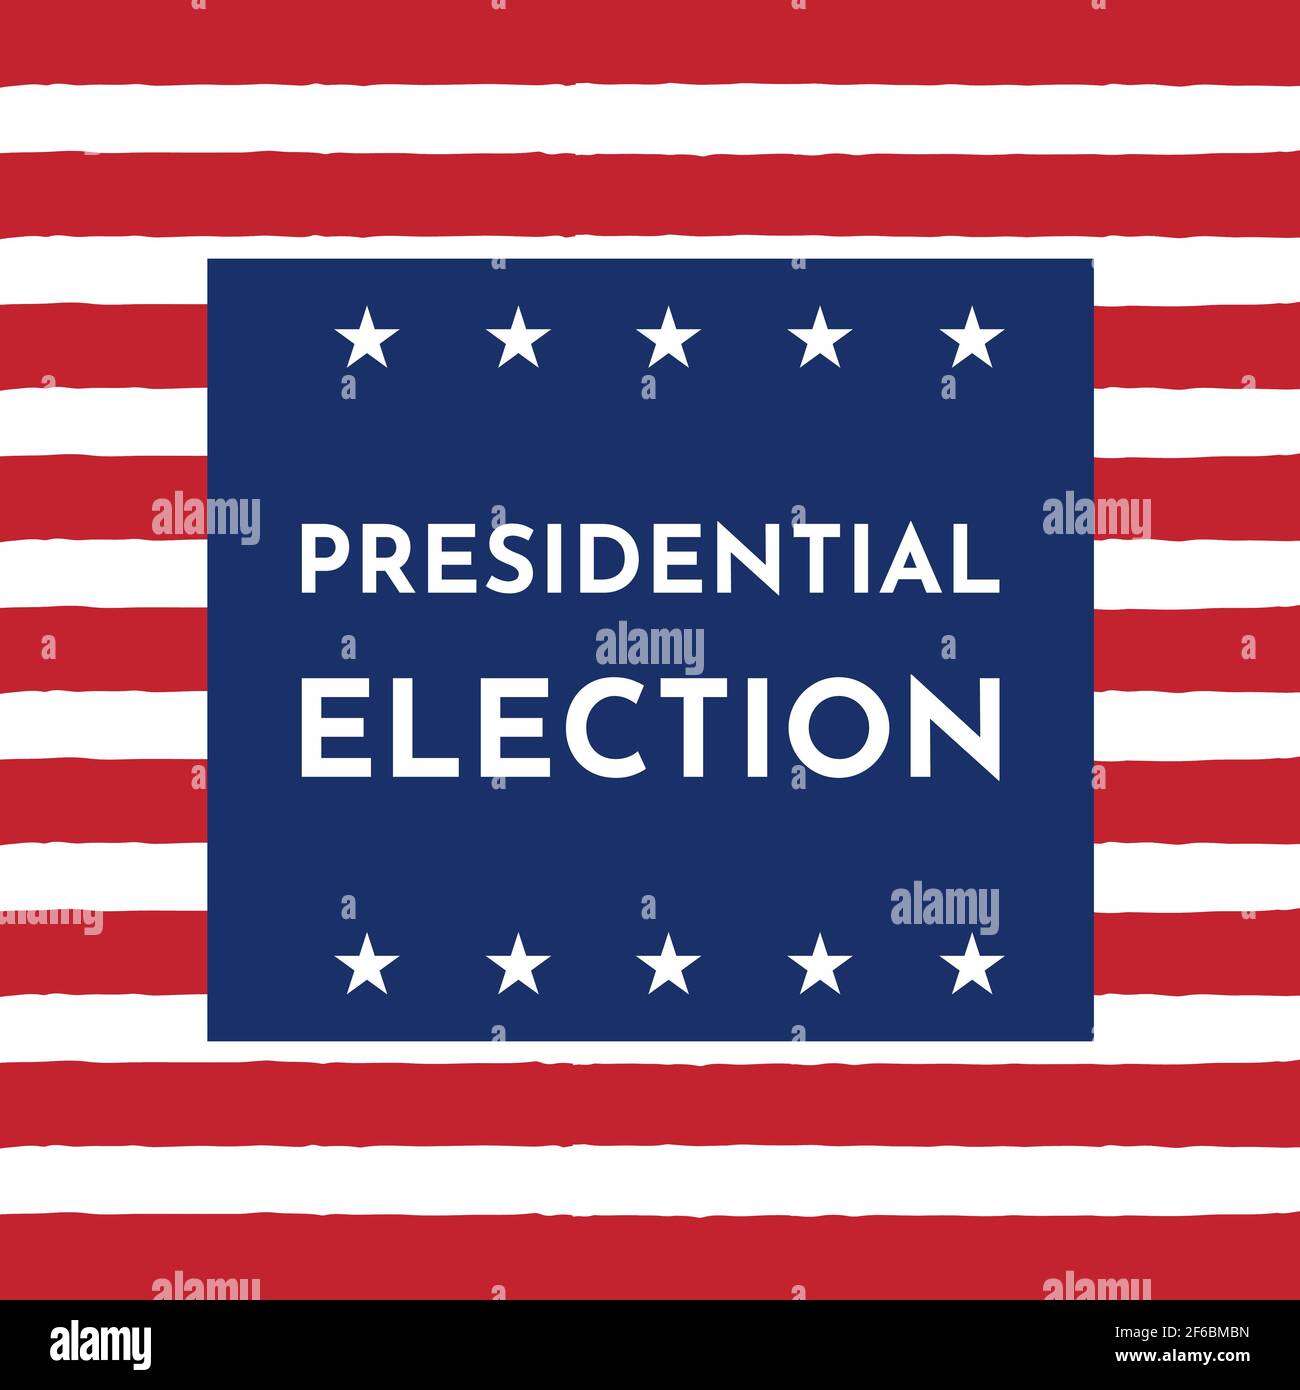 Carte d'illustration vectorielle avec symboles Etats-Unis. Élection présidentielle de 2020. Étoiles et rayures. Rouge, bleu. Illustration de Vecteur